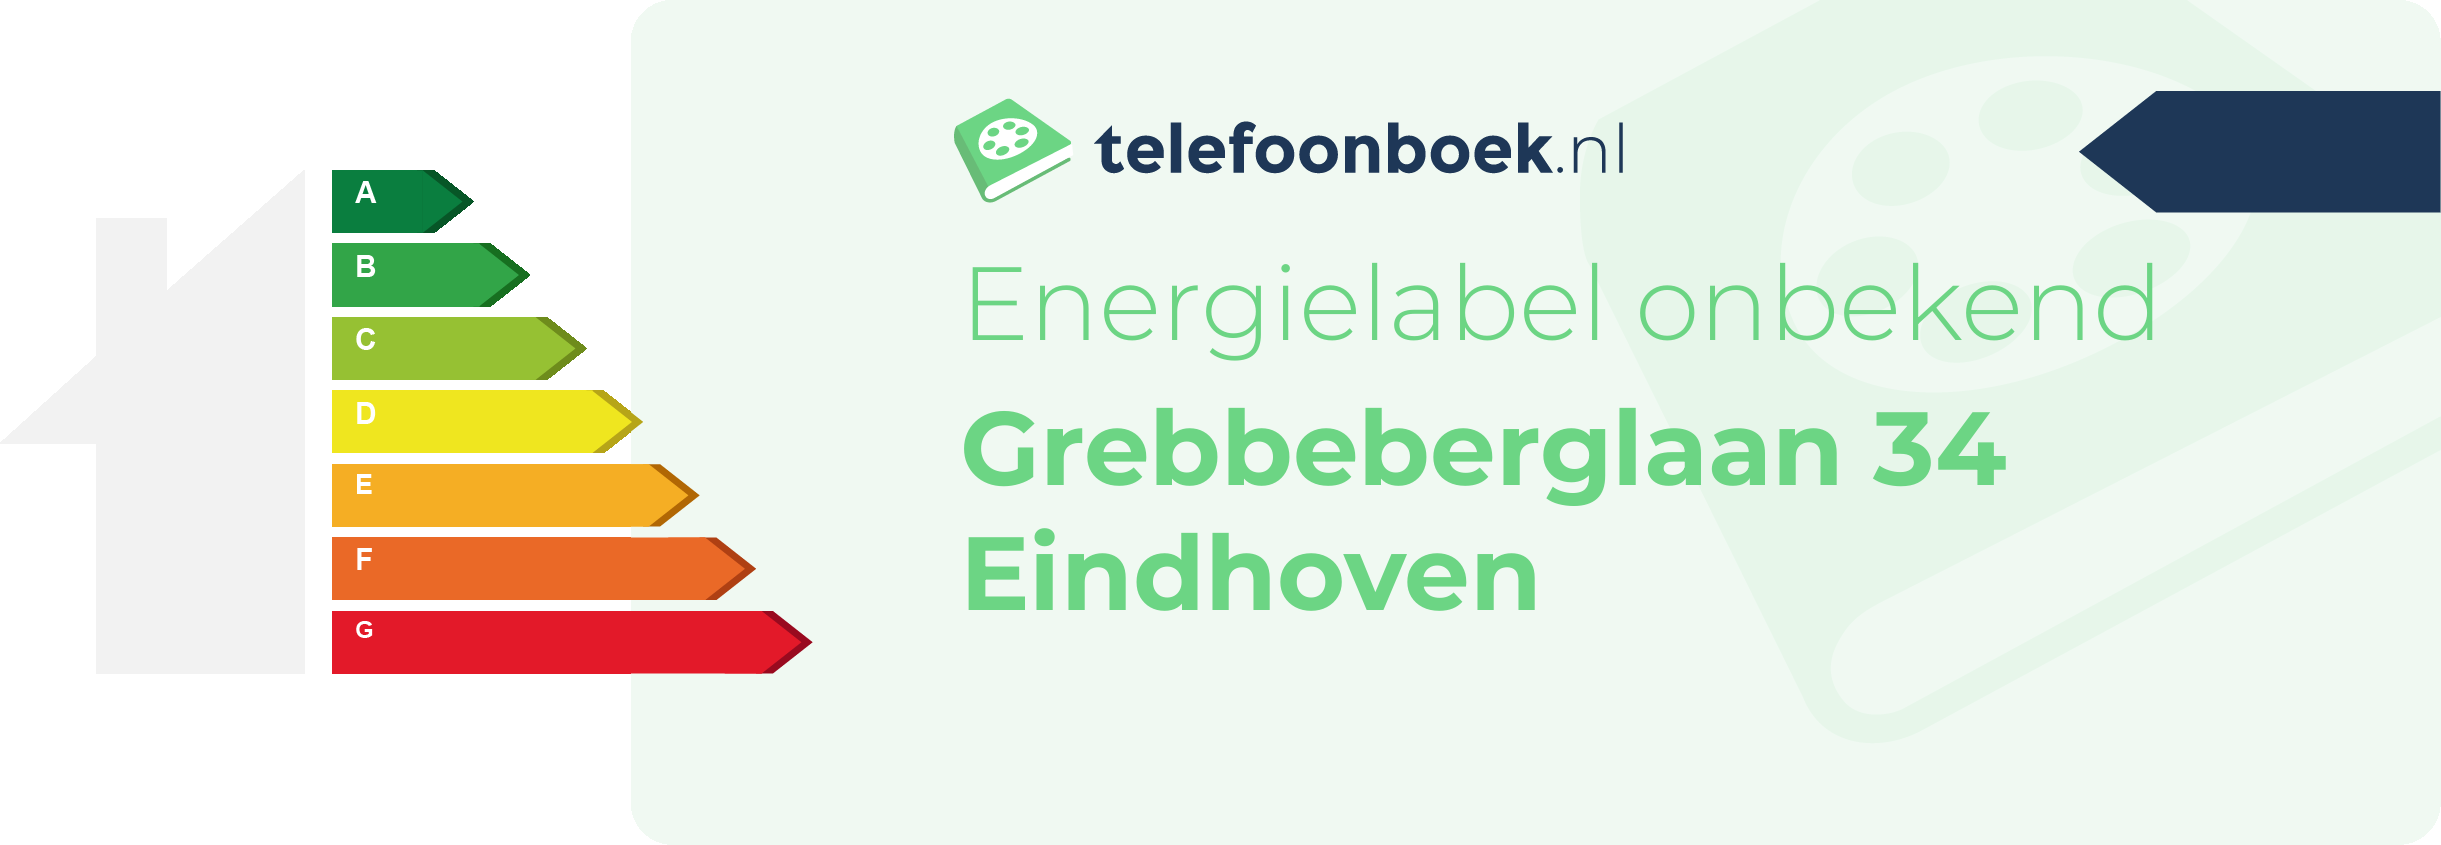 Energielabel Grebbeberglaan 34 Eindhoven